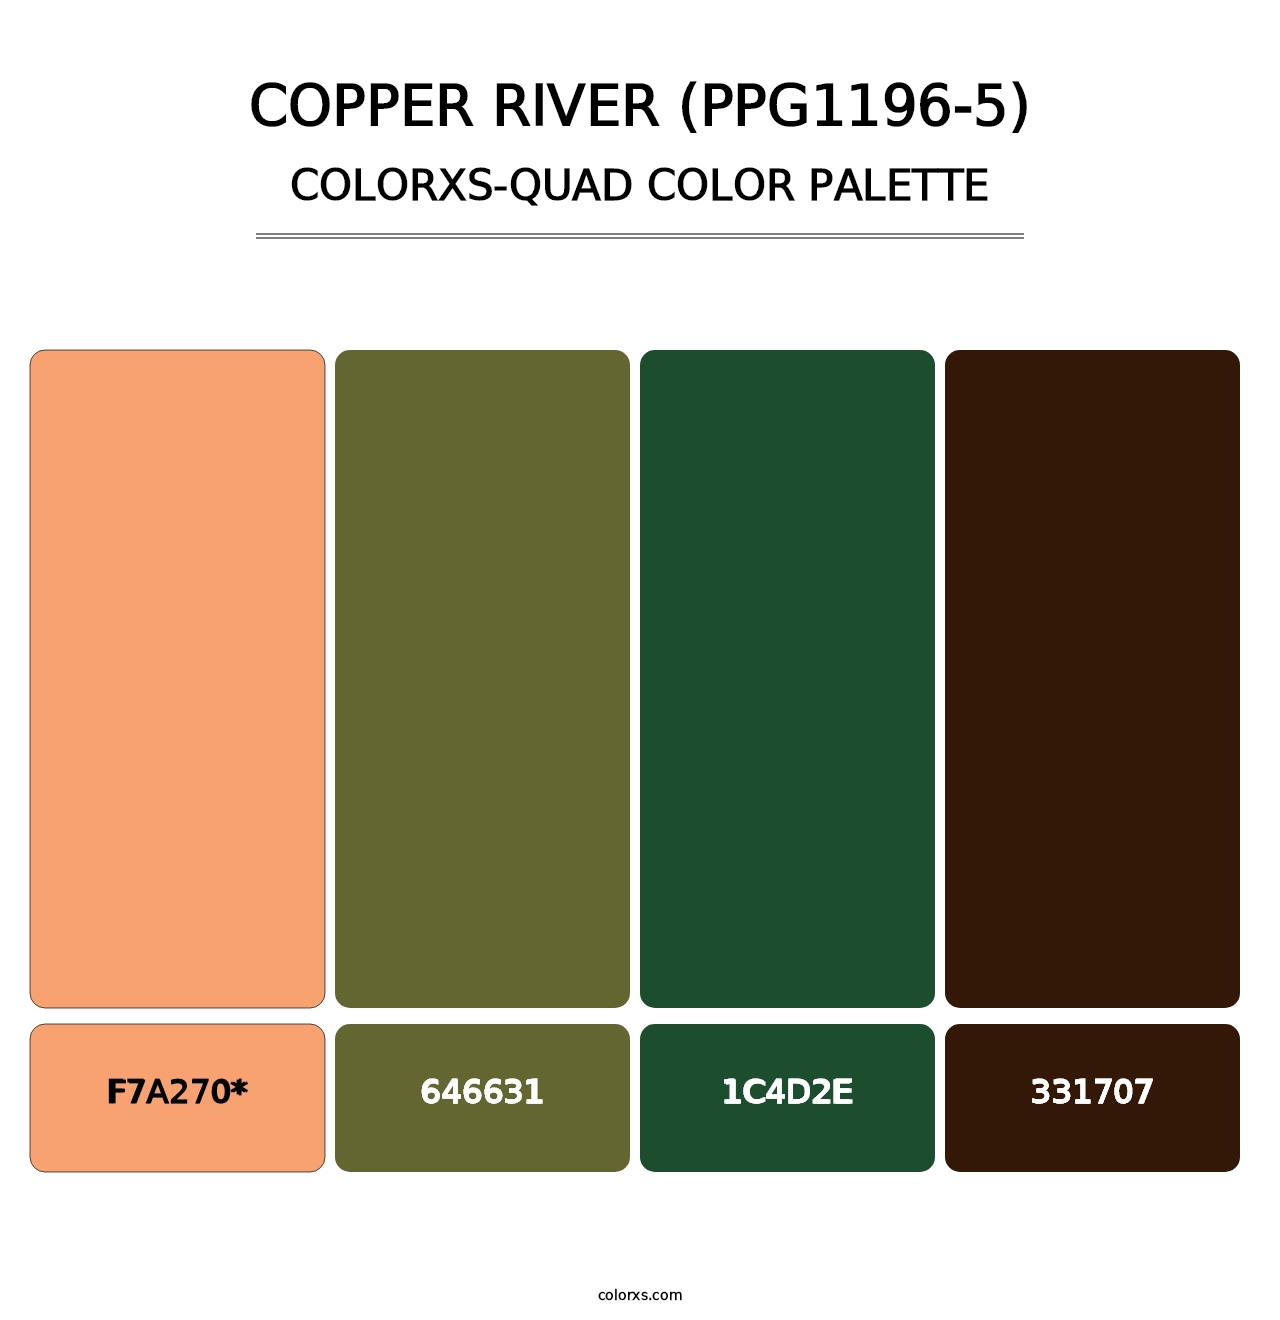 Copper River (PPG1196-5) - Colorxs Quad Palette